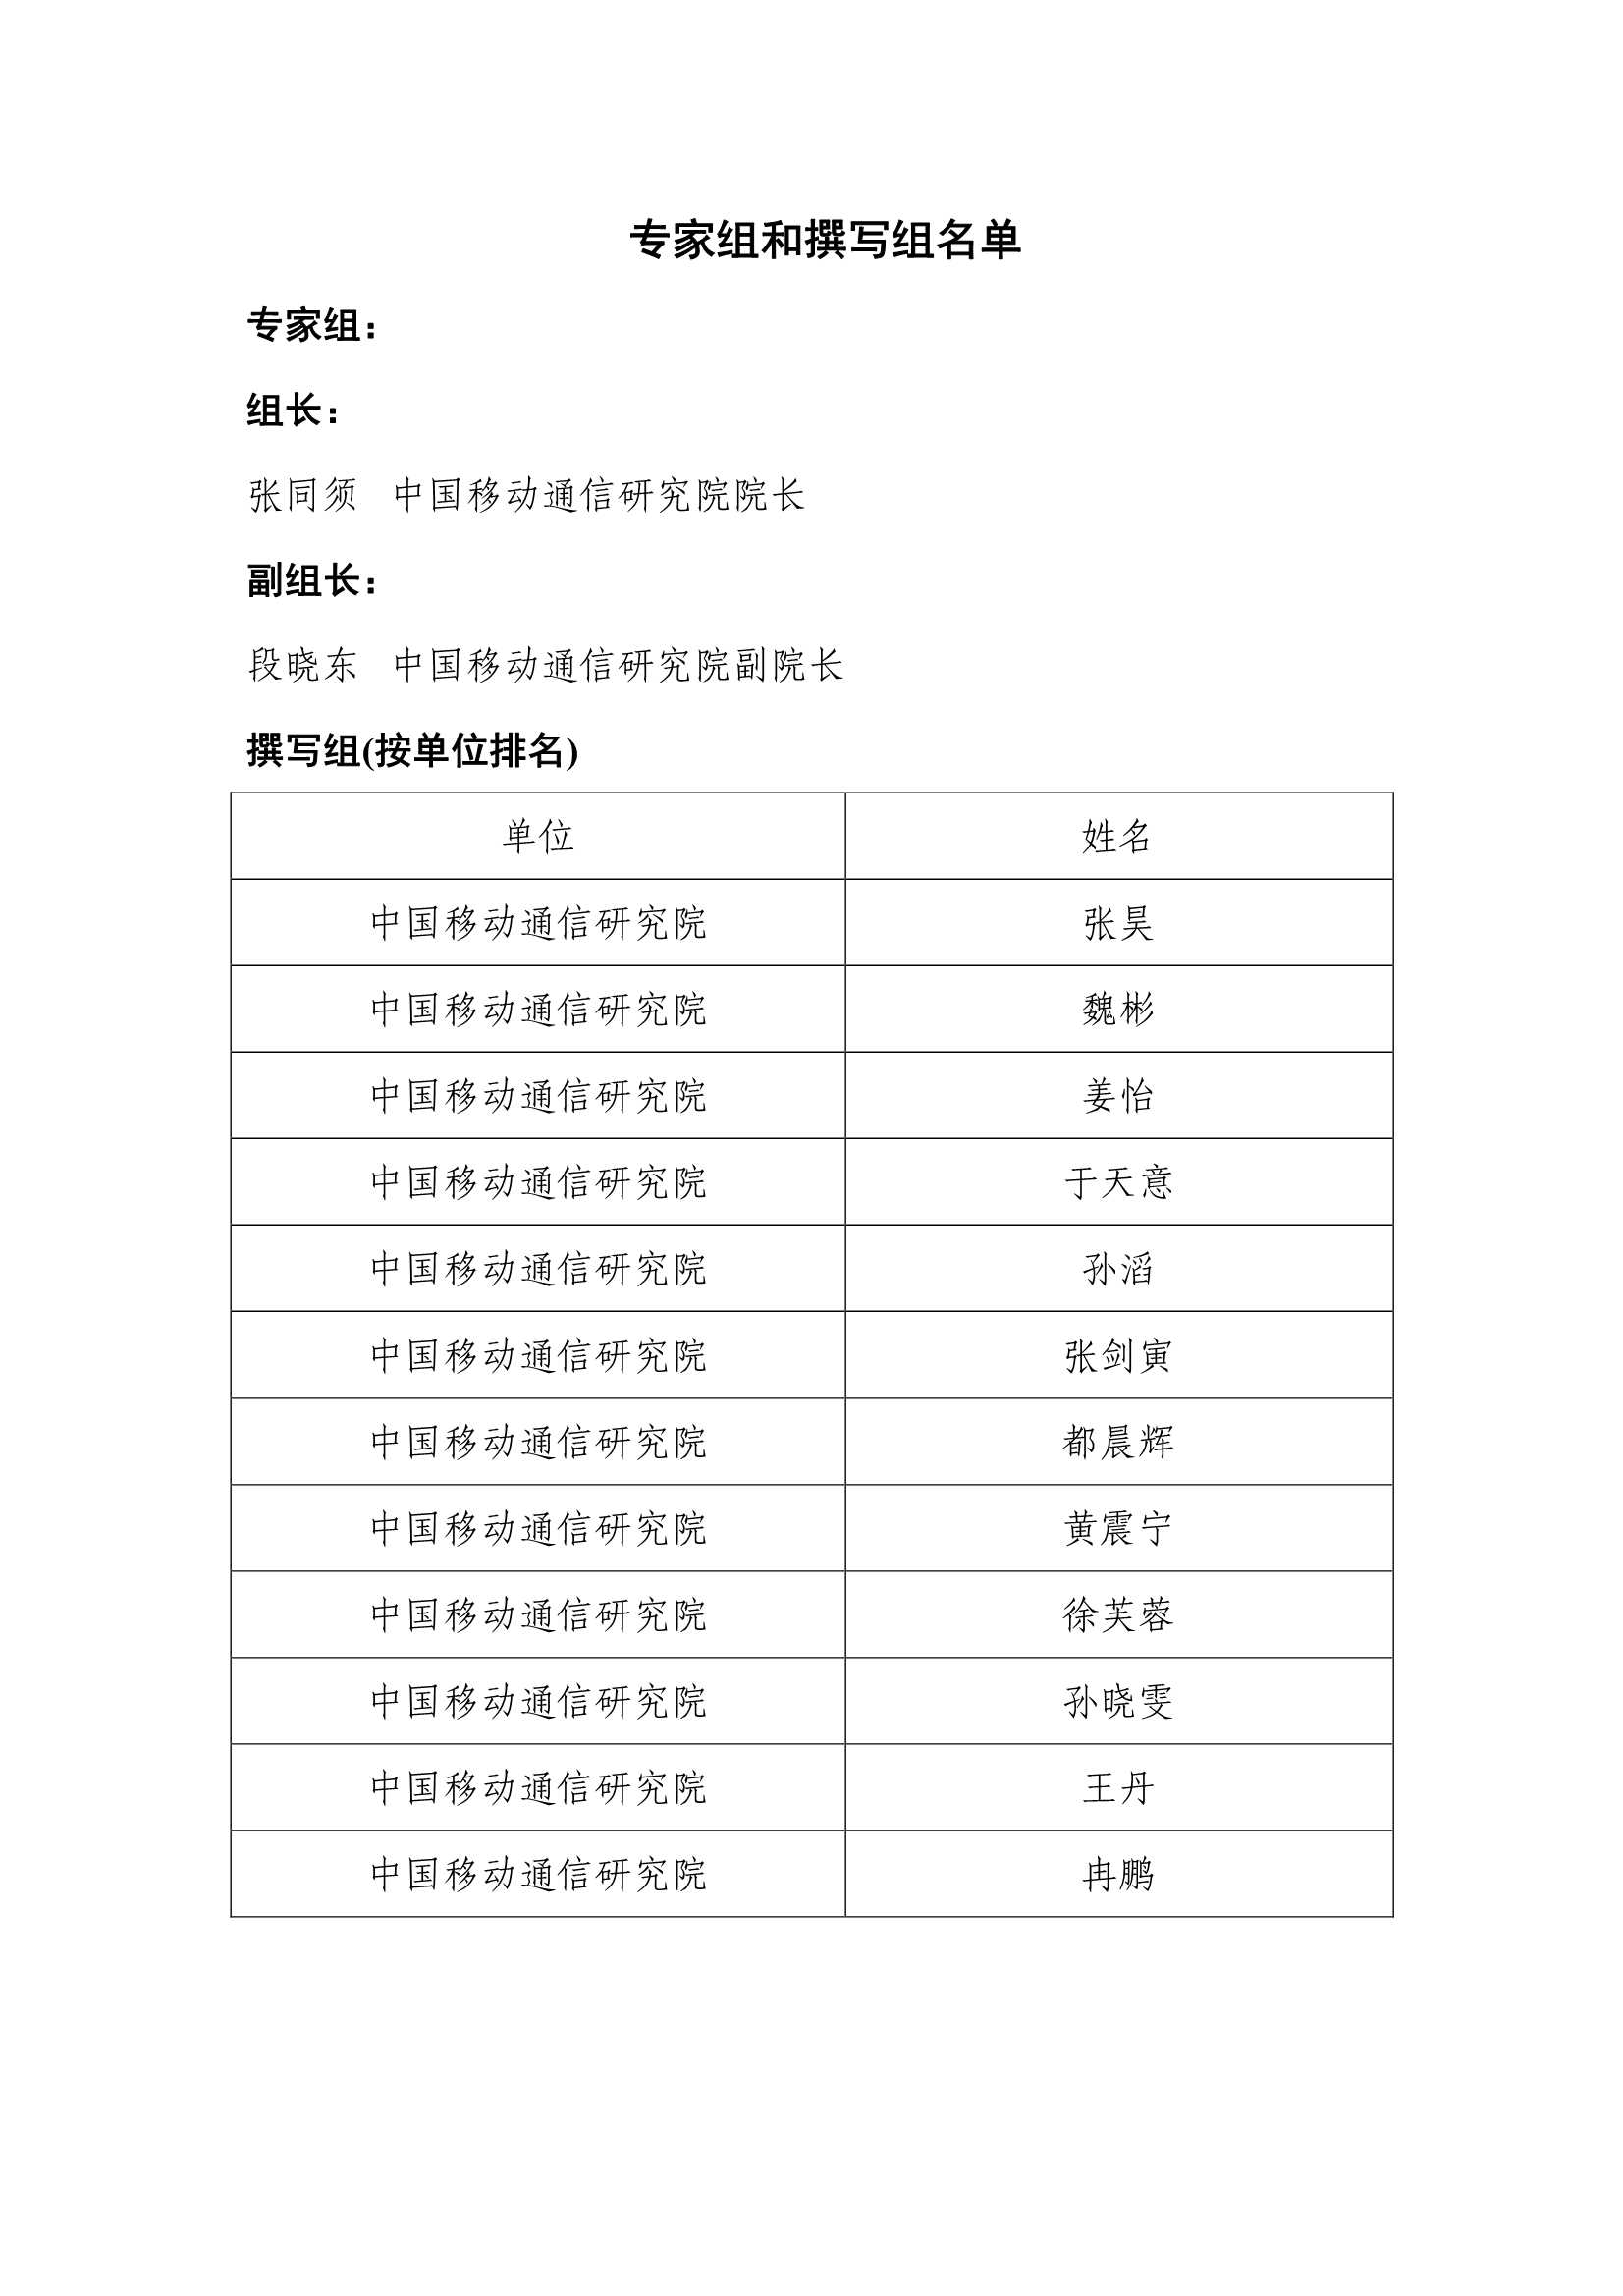 中国通信学会-5G专网前沿报告（2021年）-2022.04-26页